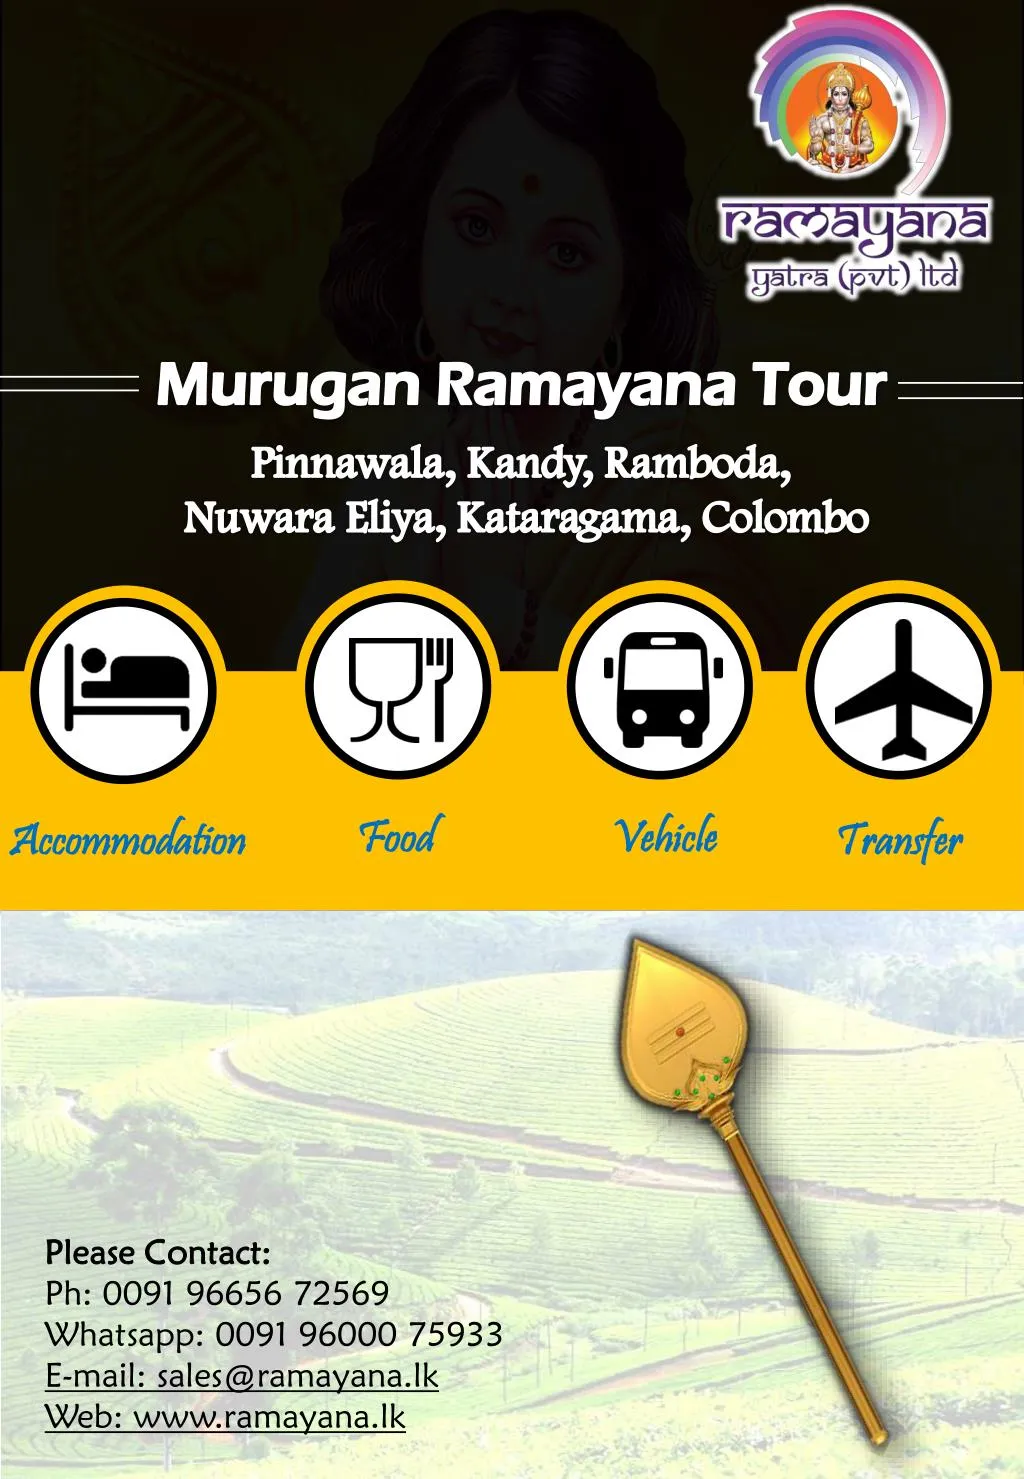 murugan ramayana tour